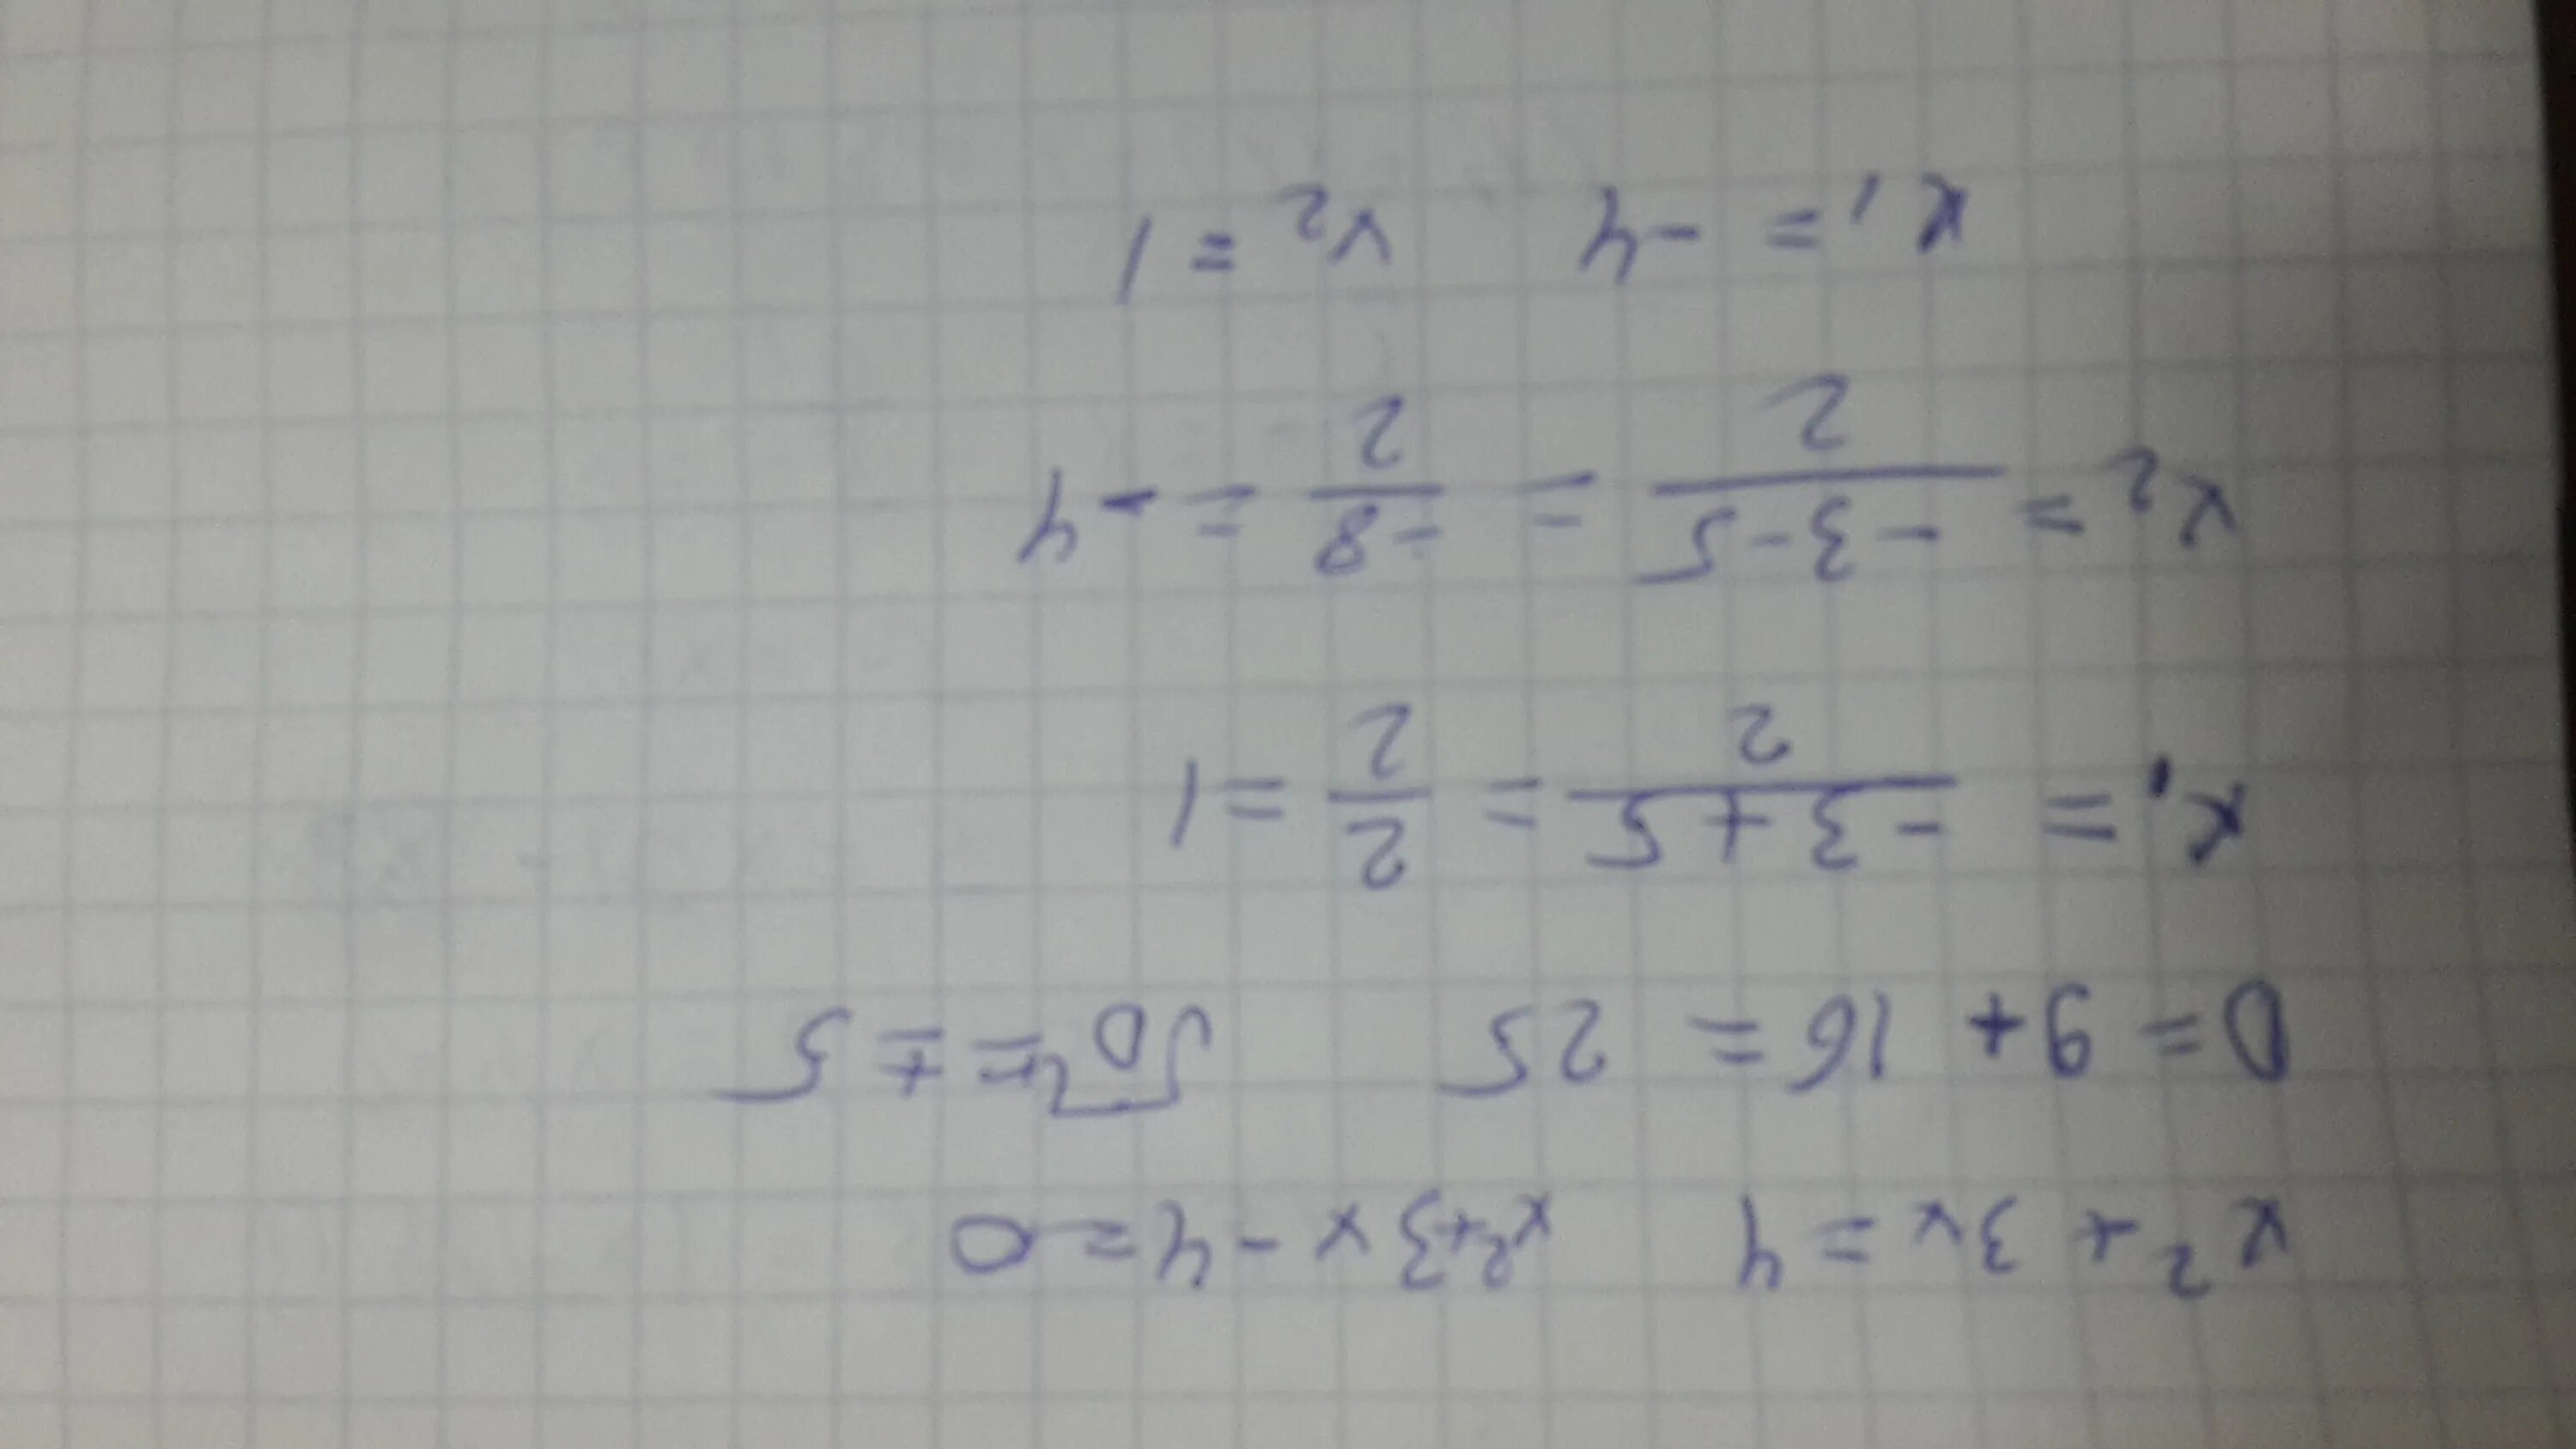 3х 4 6 8 9. Решение уравнения (8x+x)*4=592. Решите уравнения и запишите корни в порядке возрастания. Запишите корни в порядке возрастания через точку с запятой.